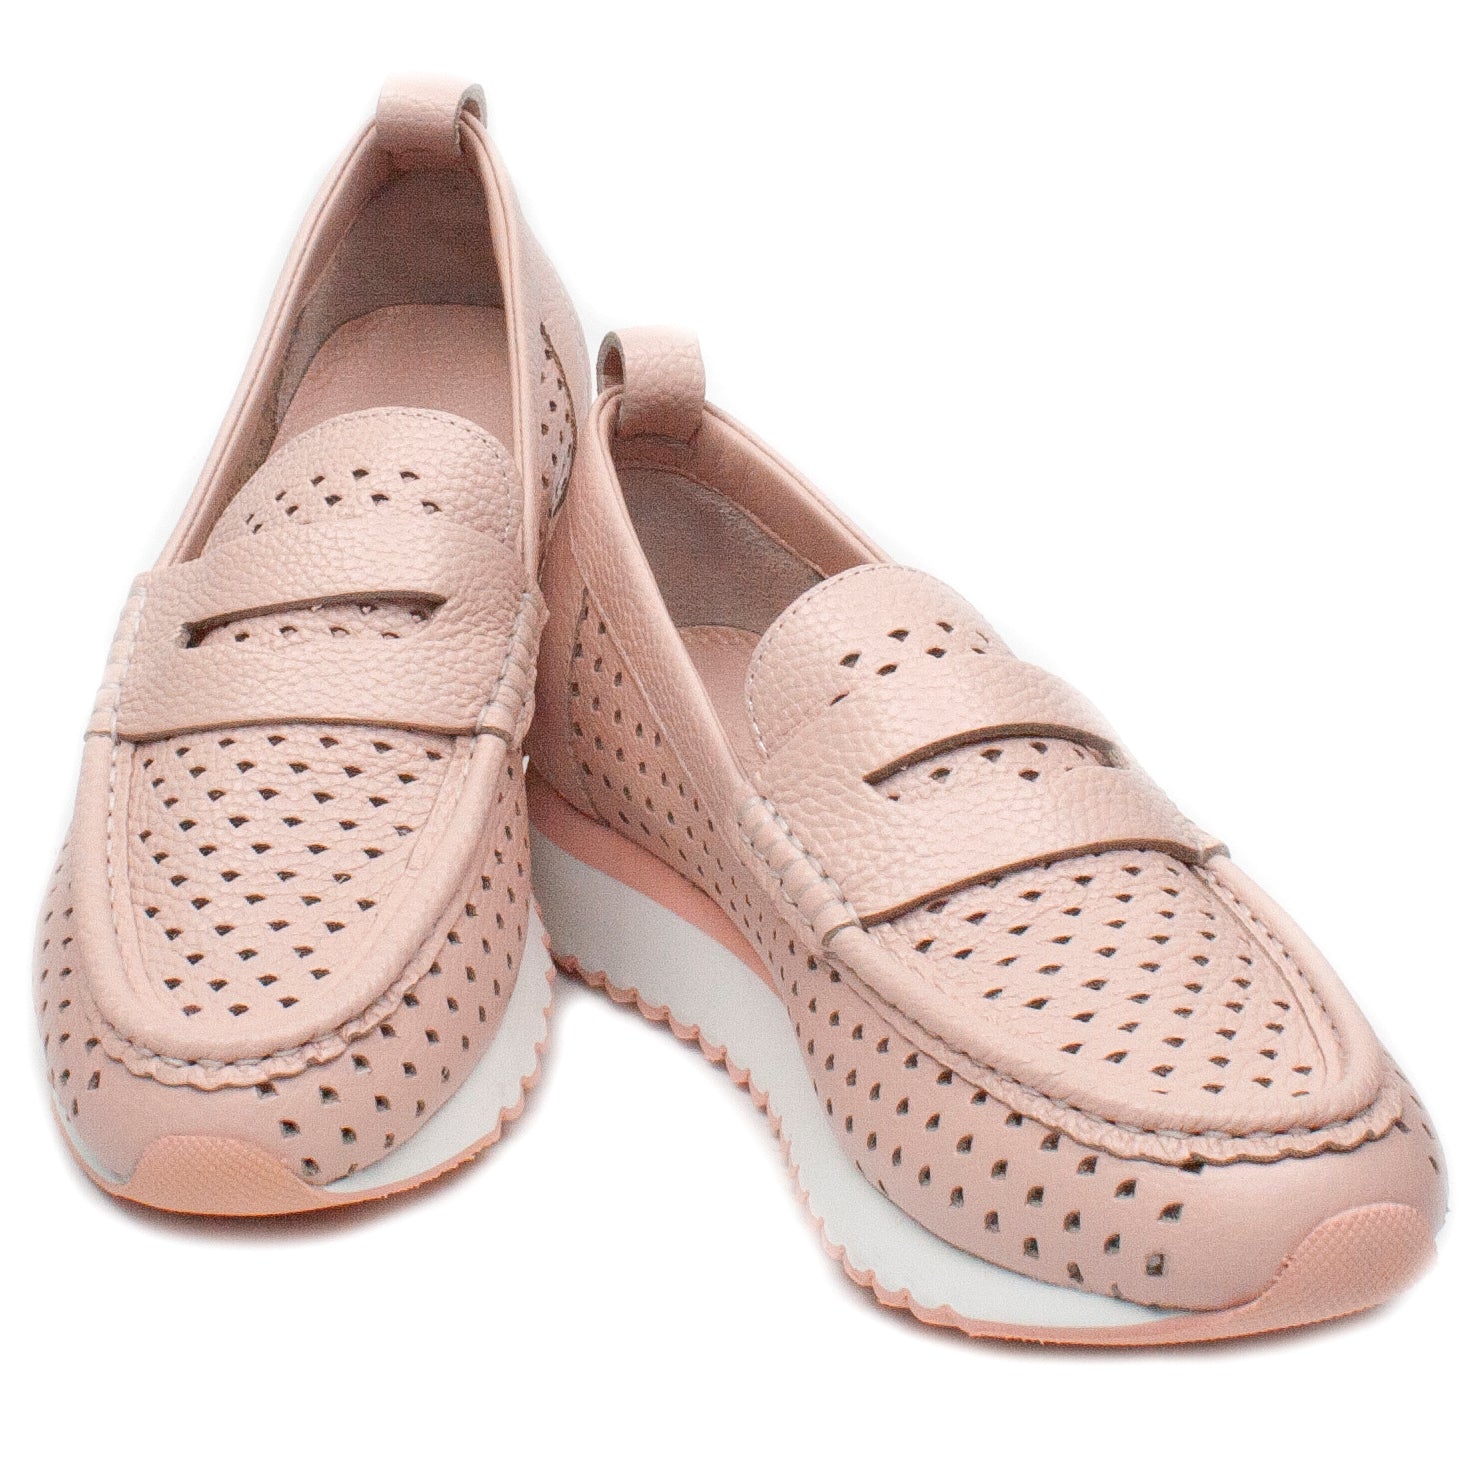 Alpino Pantofi dama primavara 22YA 2084 roz ID2946-ROZ